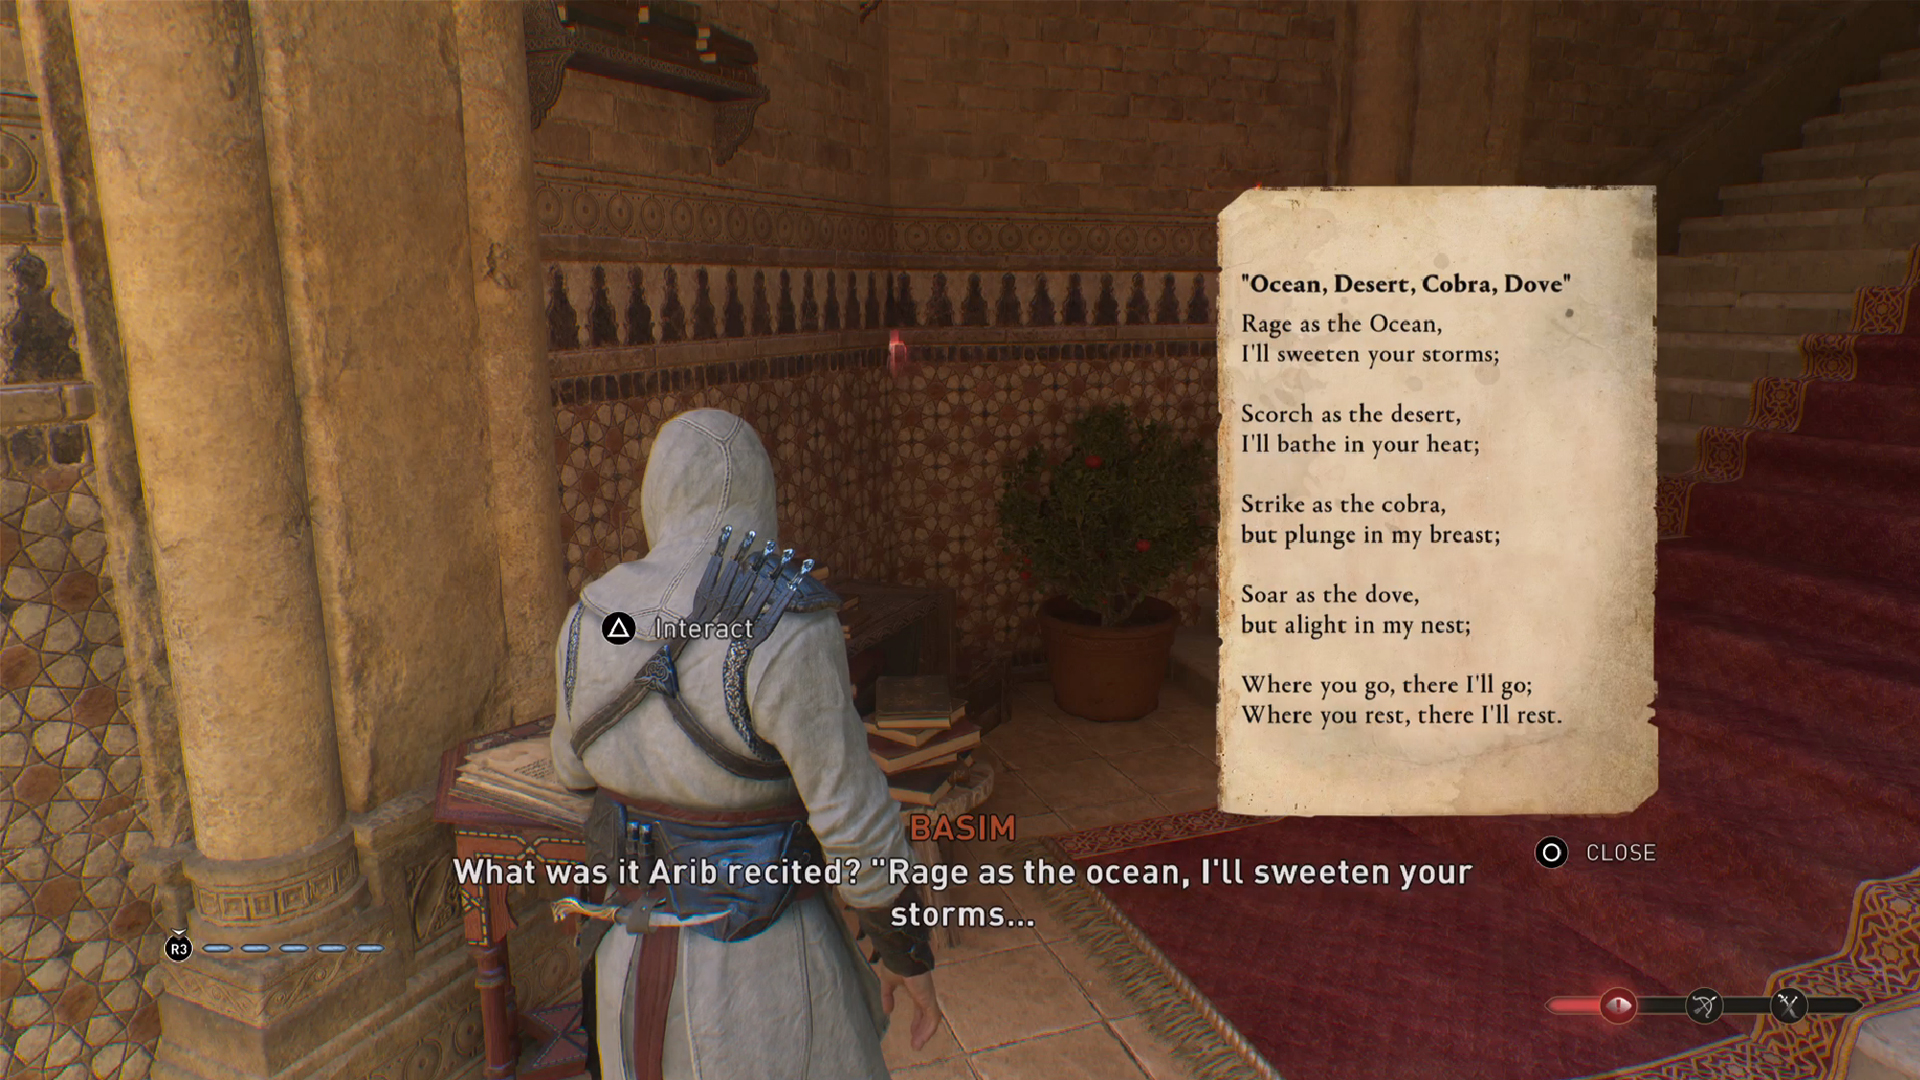 La poesia coinvolta nell'enigma del libro in Assassin's Creed Mirage